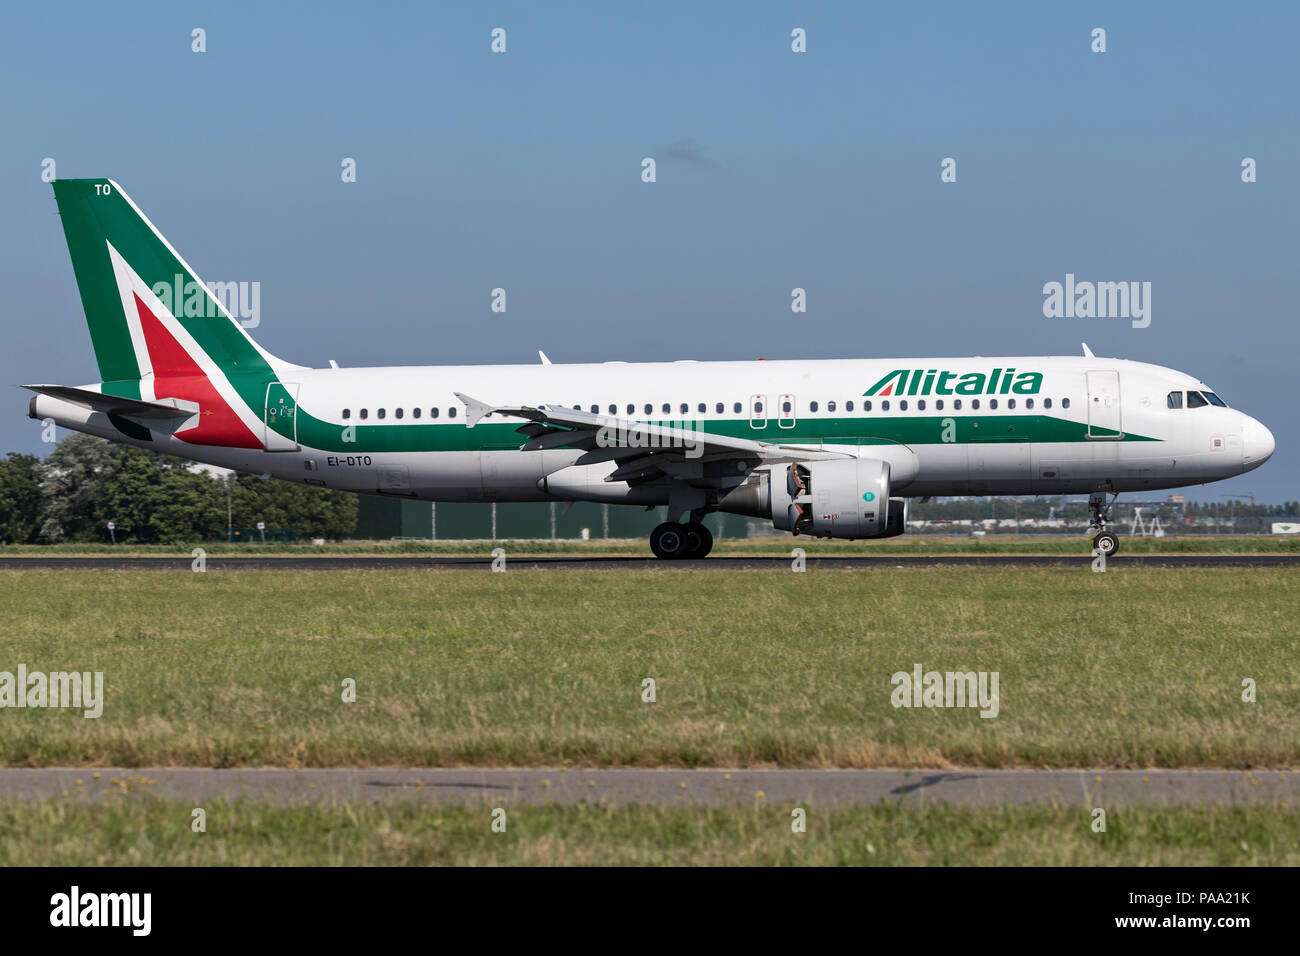 Alitalia italiana A320-200 con registrazione irlandese EI-DTO appena atterrato sulla pista 18R (Polderbaan) dell'aeroporto di Amsterdam Schiphol. Foto Stock